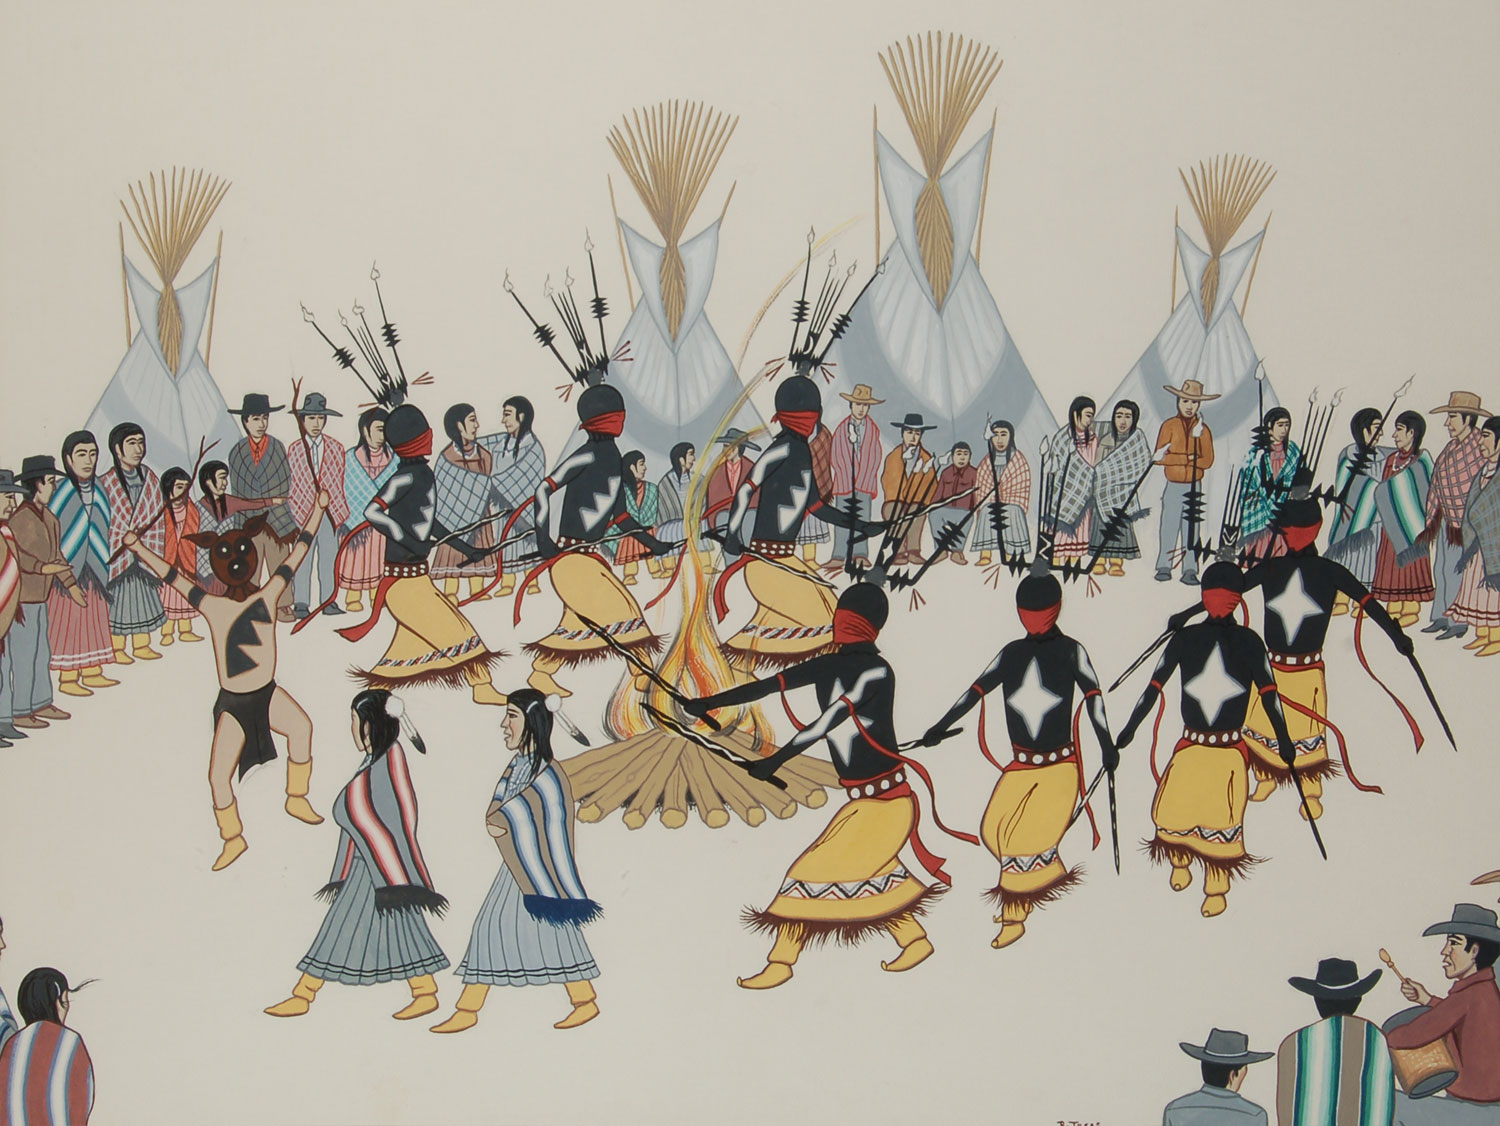 Ритуальные скрасят наши будни. Апачи мескалеро. Танцы в древности. Ритуальные танцы в древности. Танцы древних индейцев.